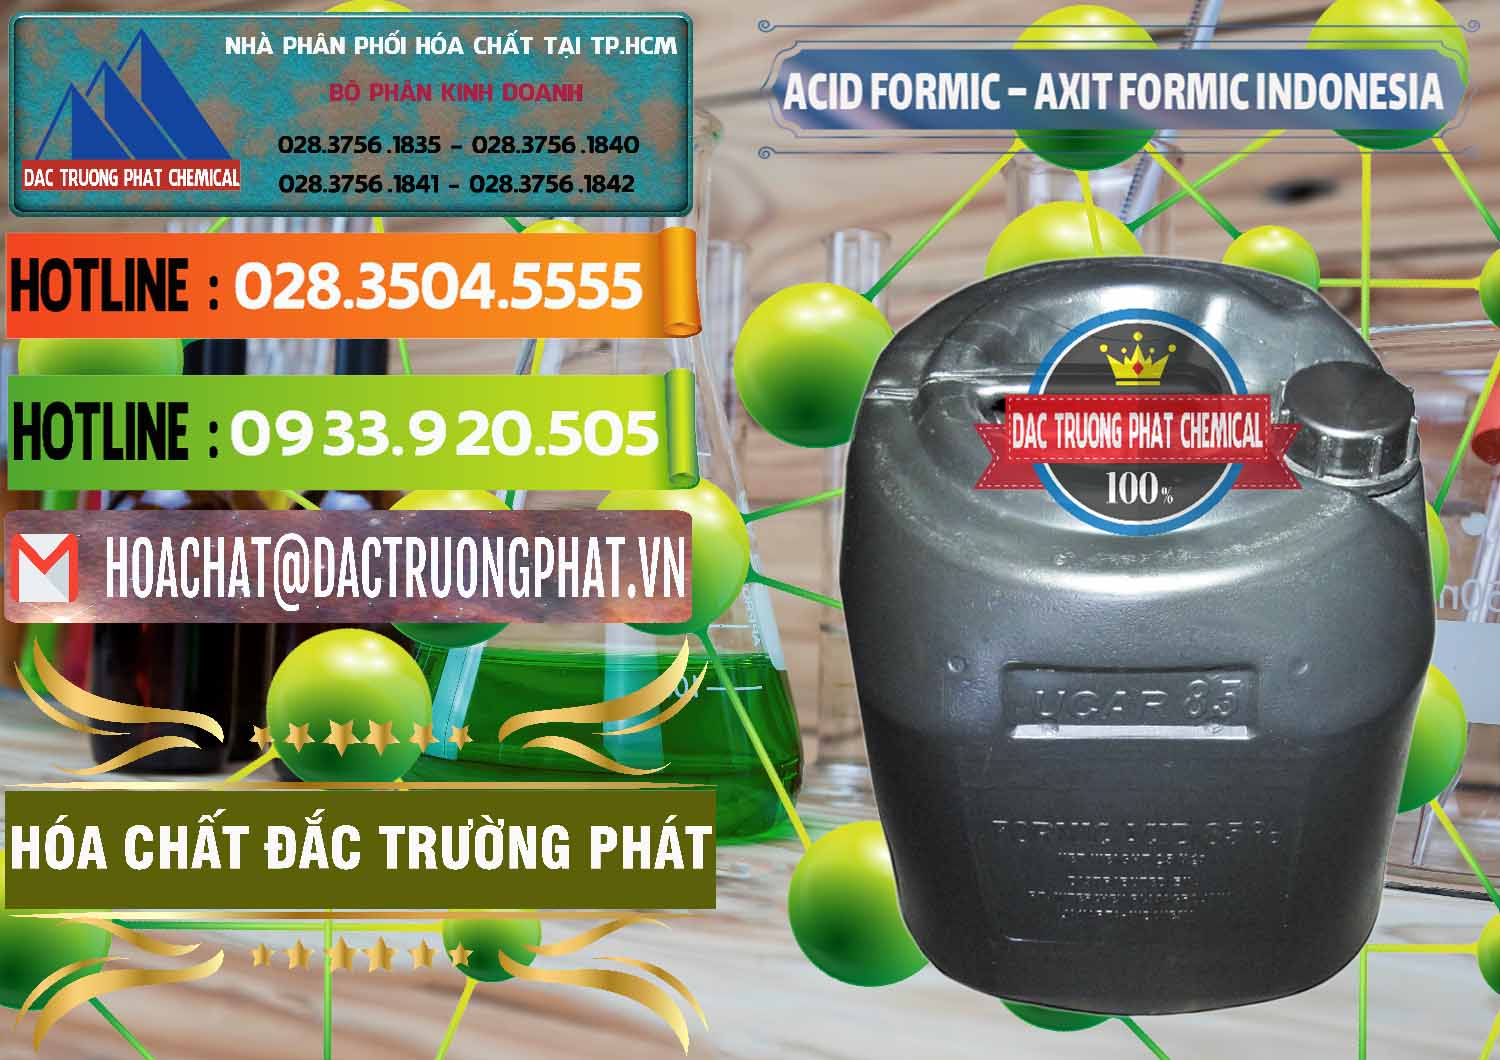 Đơn vị chuyên nhập khẩu ( bán ) Acid Formic - Axit Formic Indonesia - 0026 - Chuyên kinh doanh & cung cấp hóa chất tại TP.HCM - cungcaphoachat.com.vn